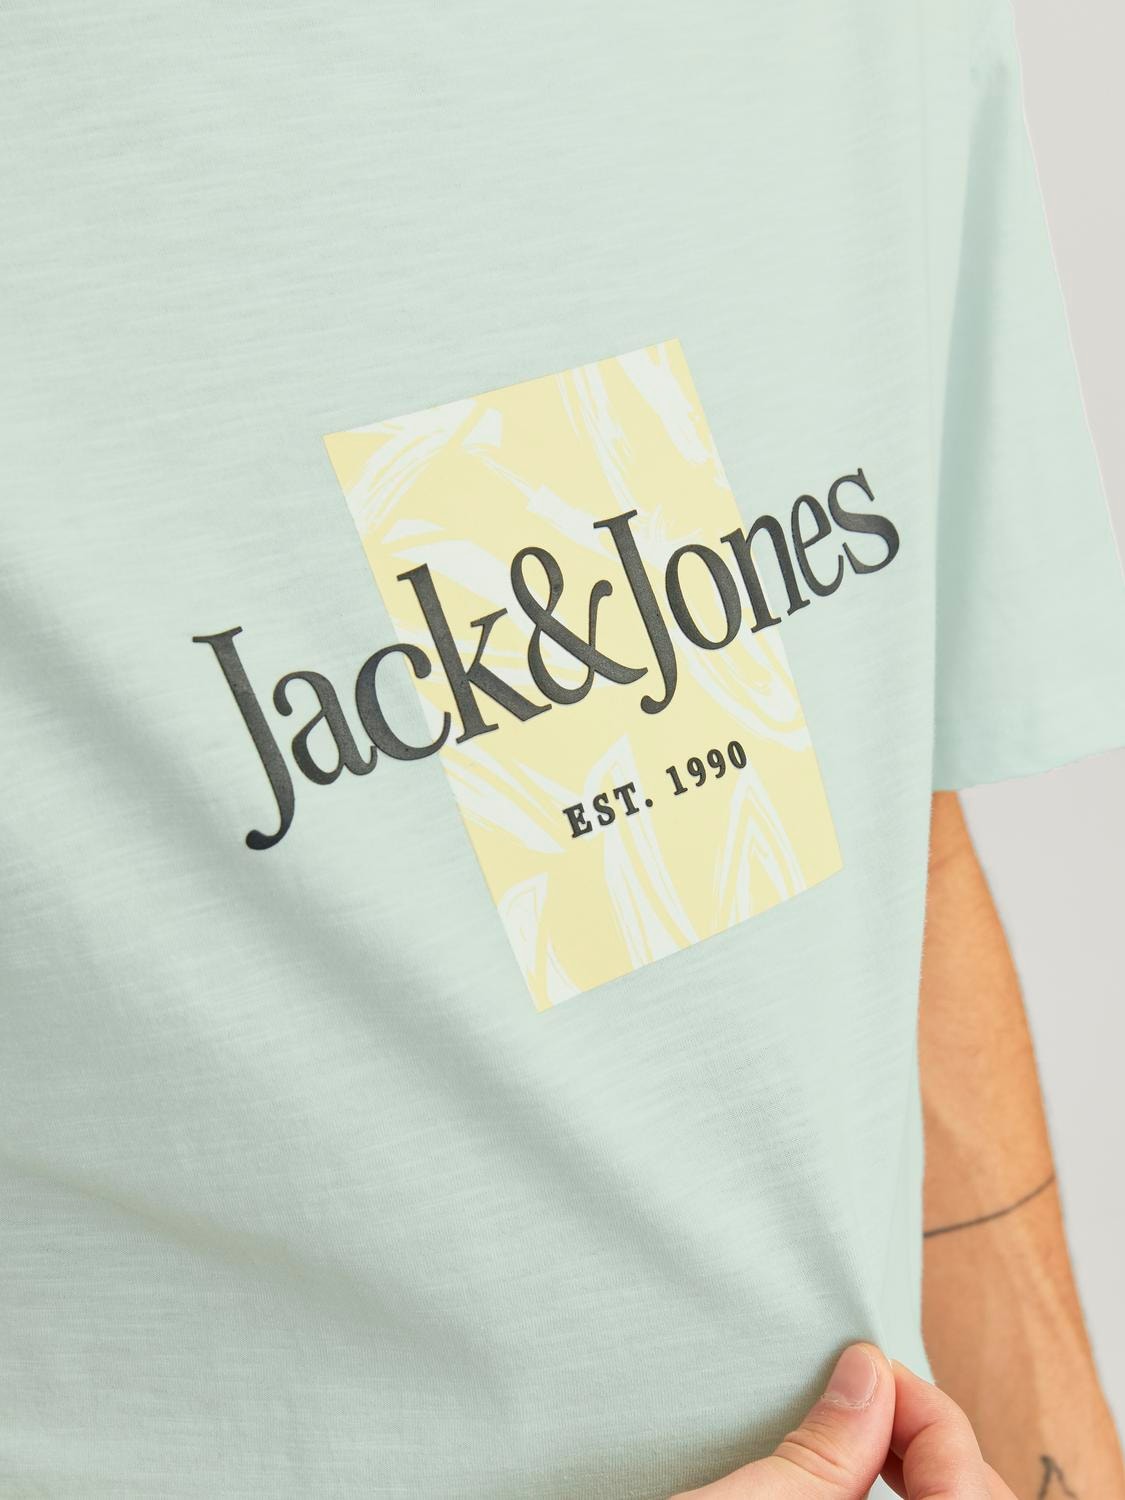 Jack & Jones Z logo Okrągły dekolt T-shirt -Skylight - 12250436